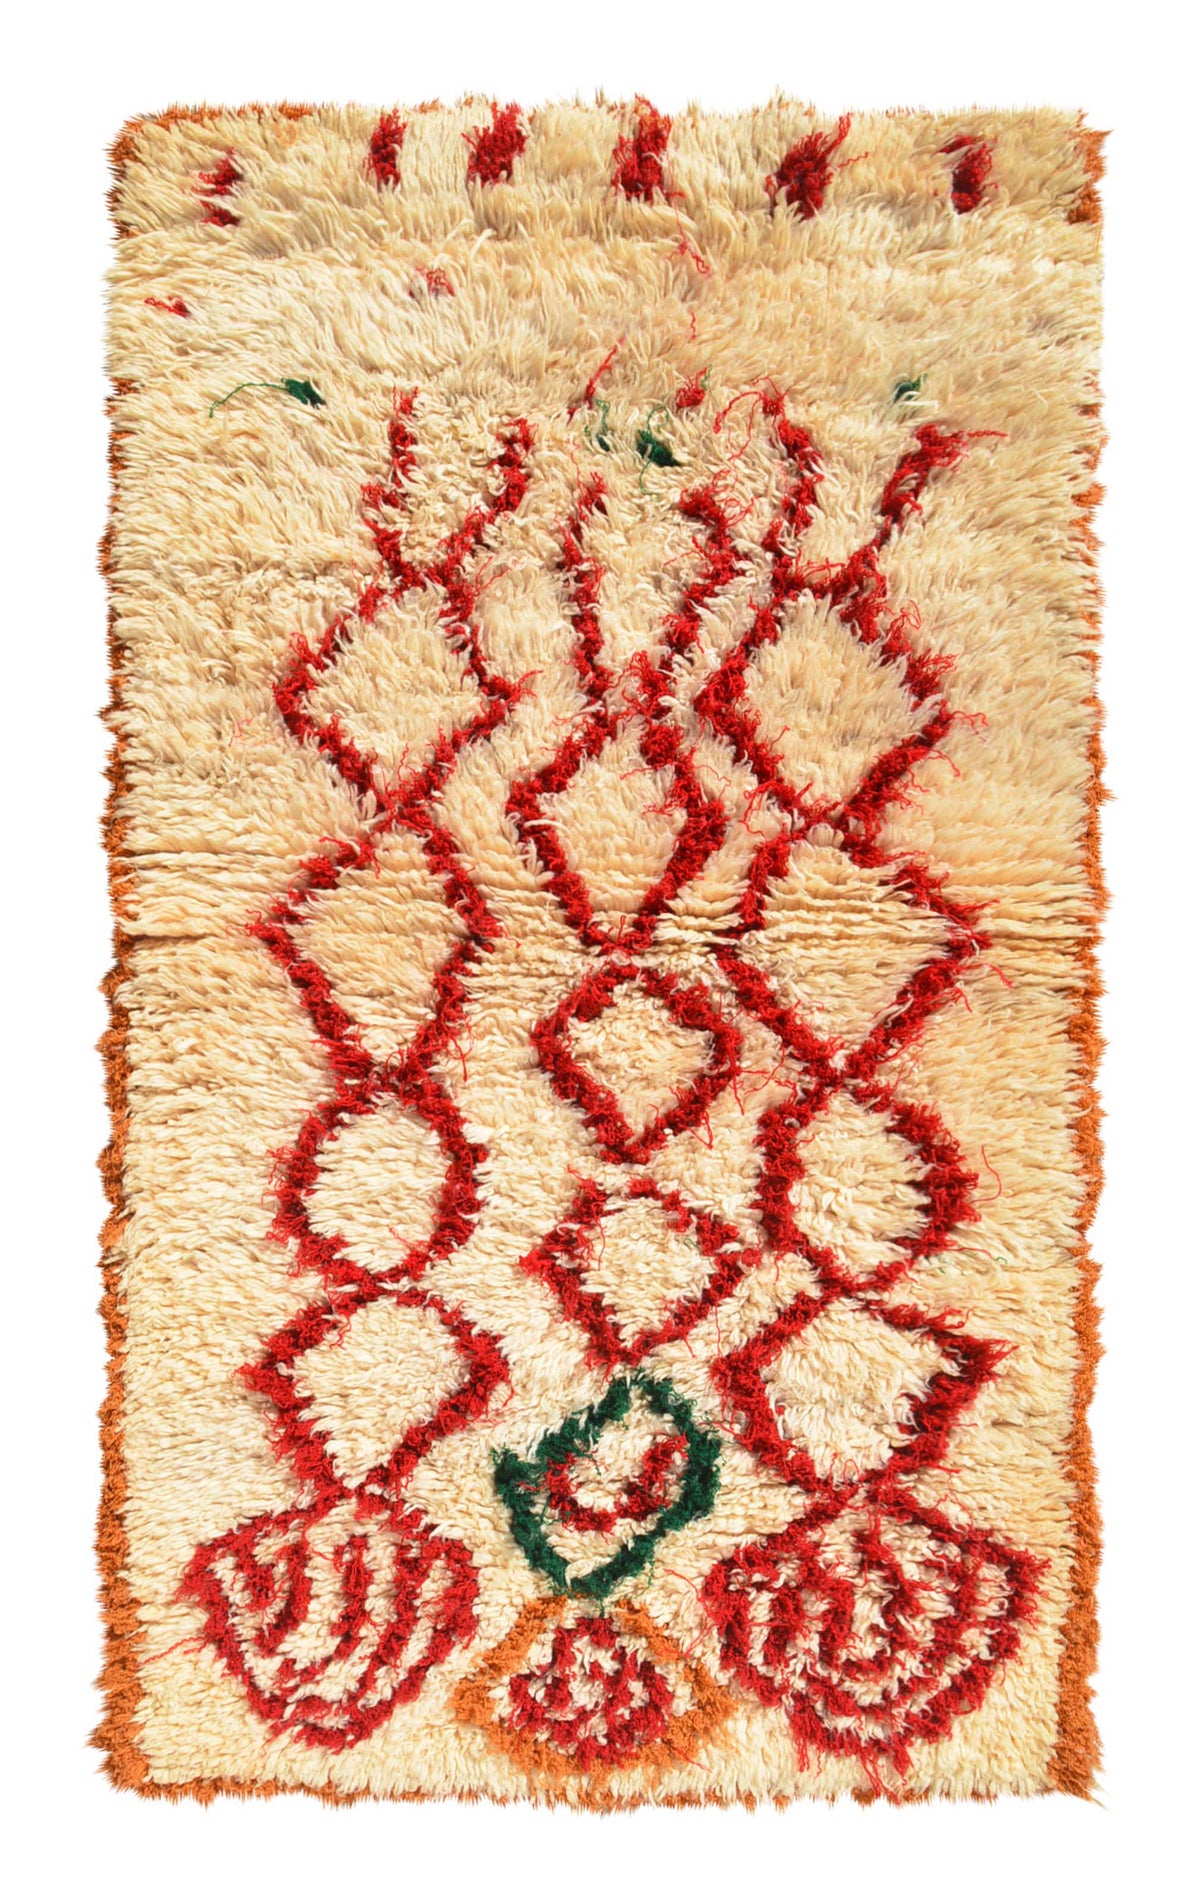 Vintage Moroccan Rug Red Vintage Rug for Sale | Faded Vintage Rugs | Genuine Vintage Handmade Faded Rugs | Illuminate Collective illuminate collective 